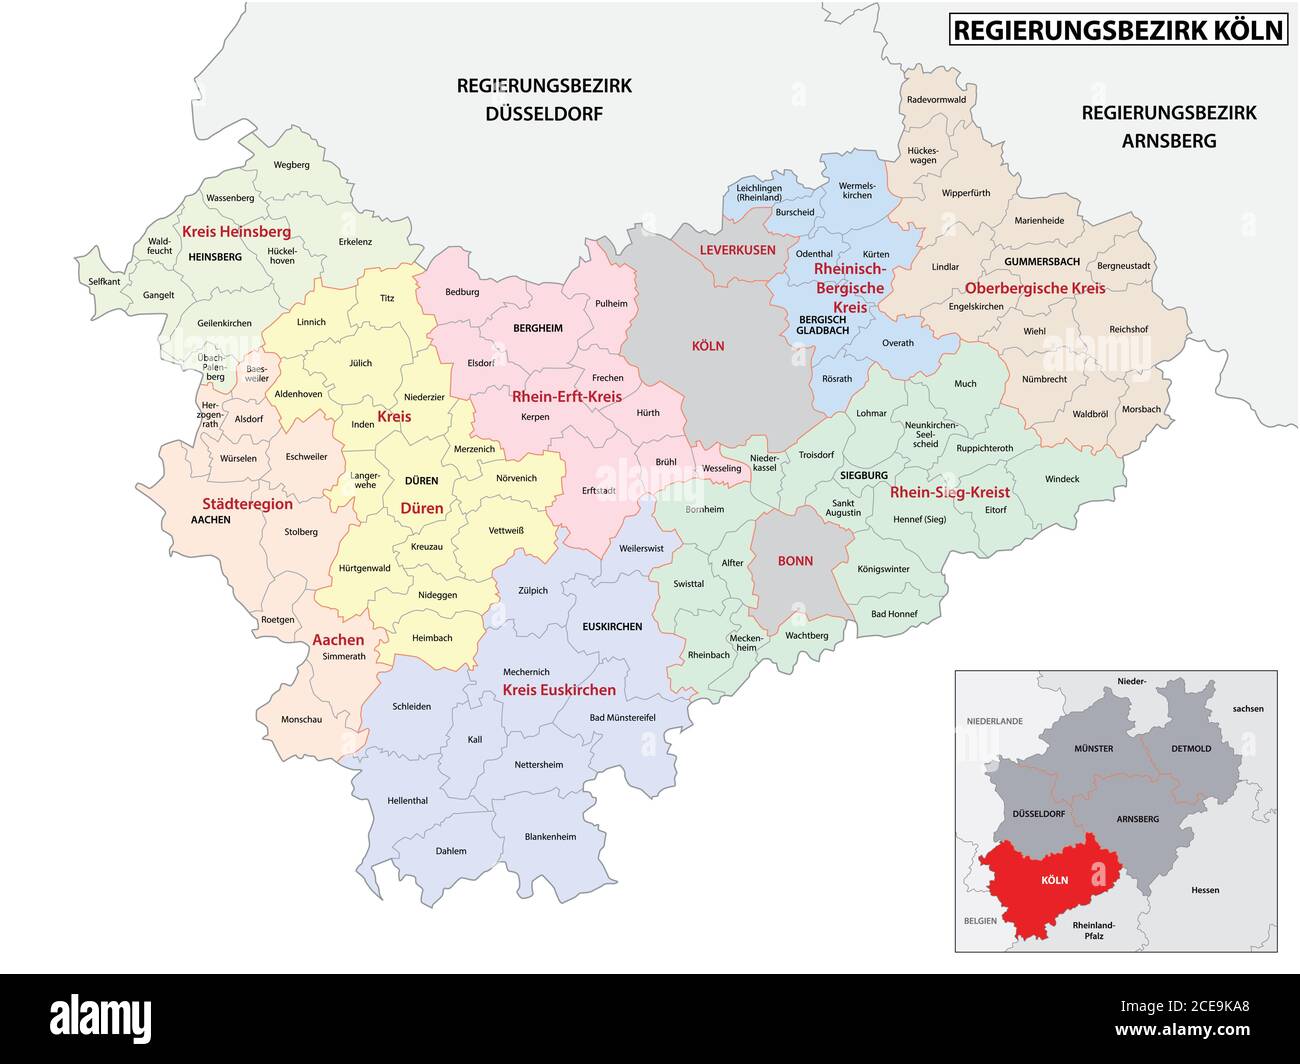 Administrative Vektorkarte der Region Köln in Deutschland, Nordrhein-Westfalen, Deutschland Stock Vektor